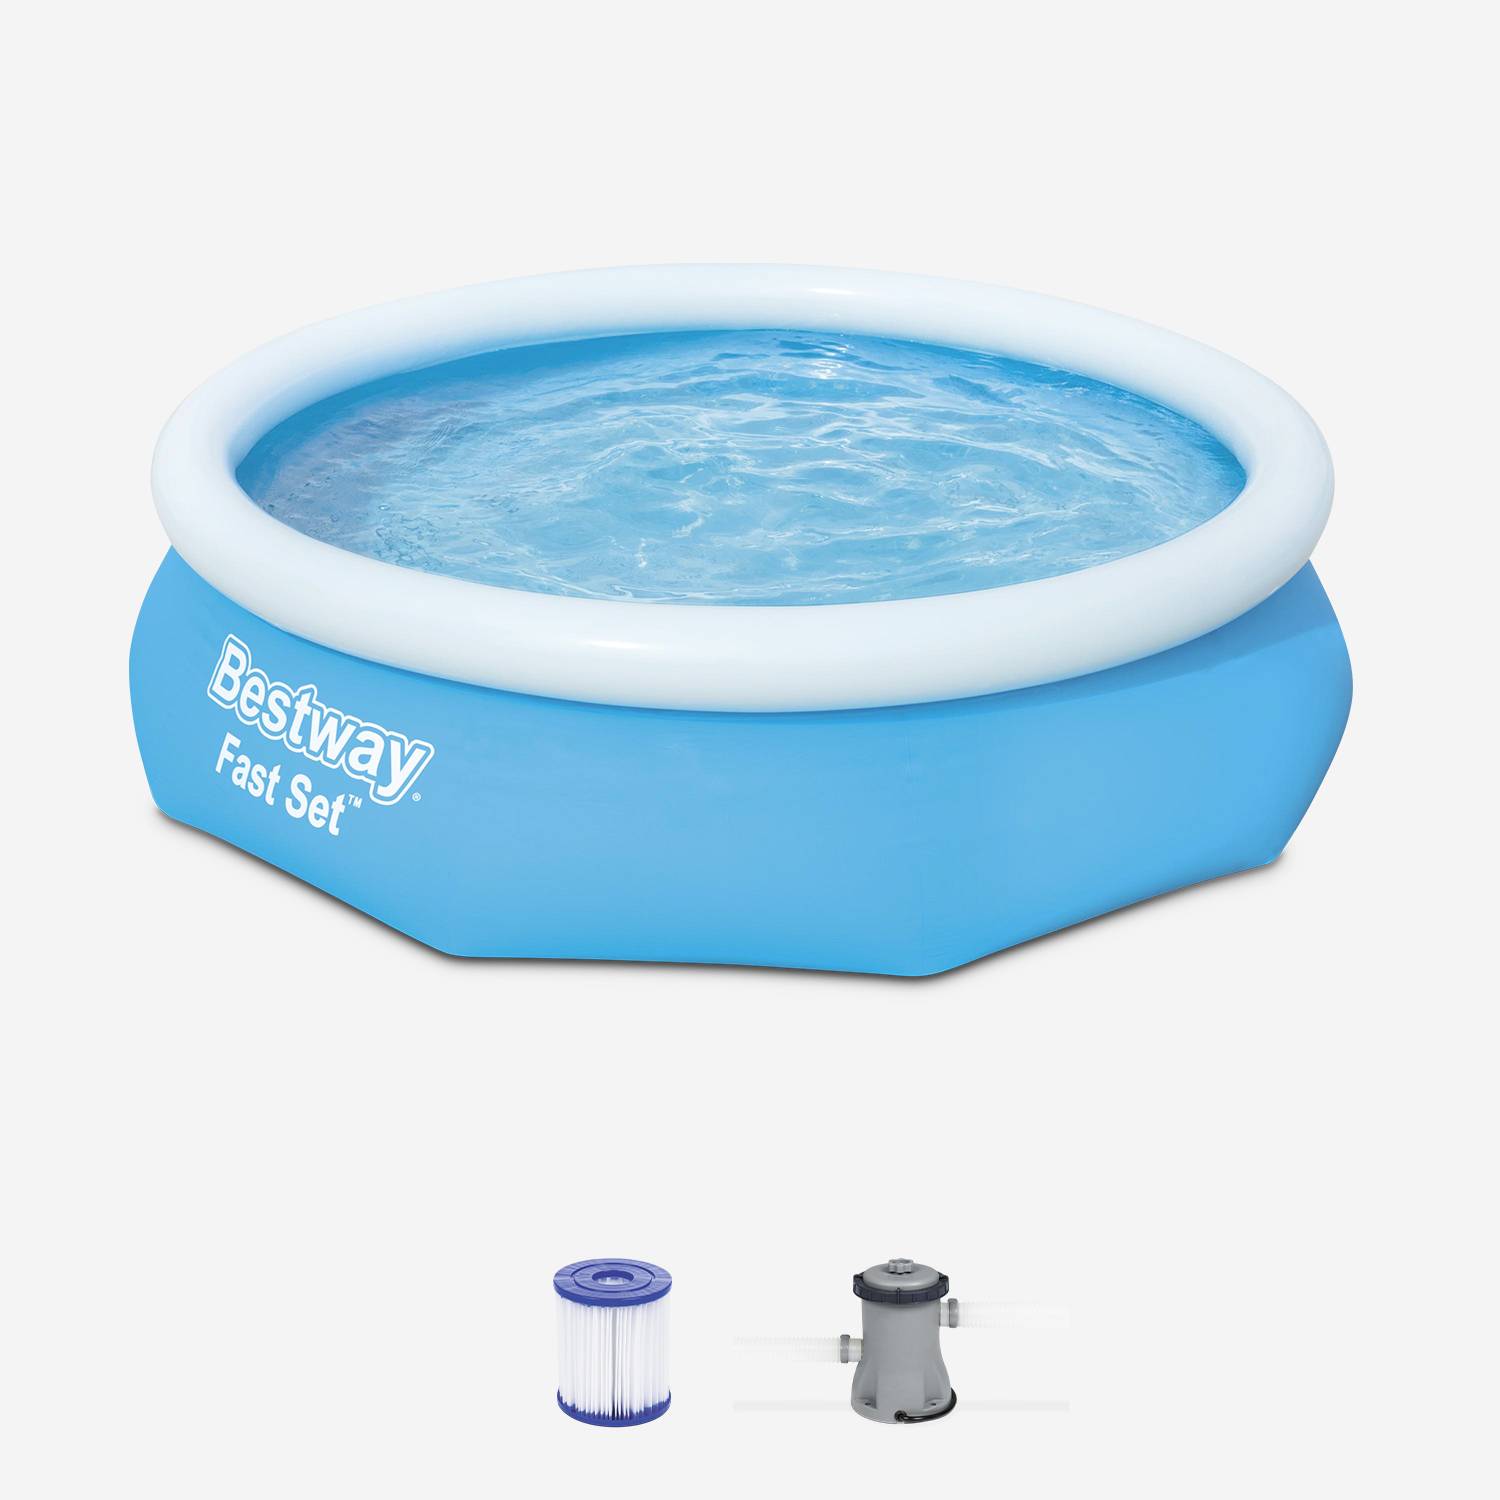 BESTWAY piscina gonfiabile autoportante blu - DIAMOND ⌀ 300 x 76 cm - piscina fuori terra rotonda autoportante con filtro a cartuccia + 1 cartuccia inclusa Photo1